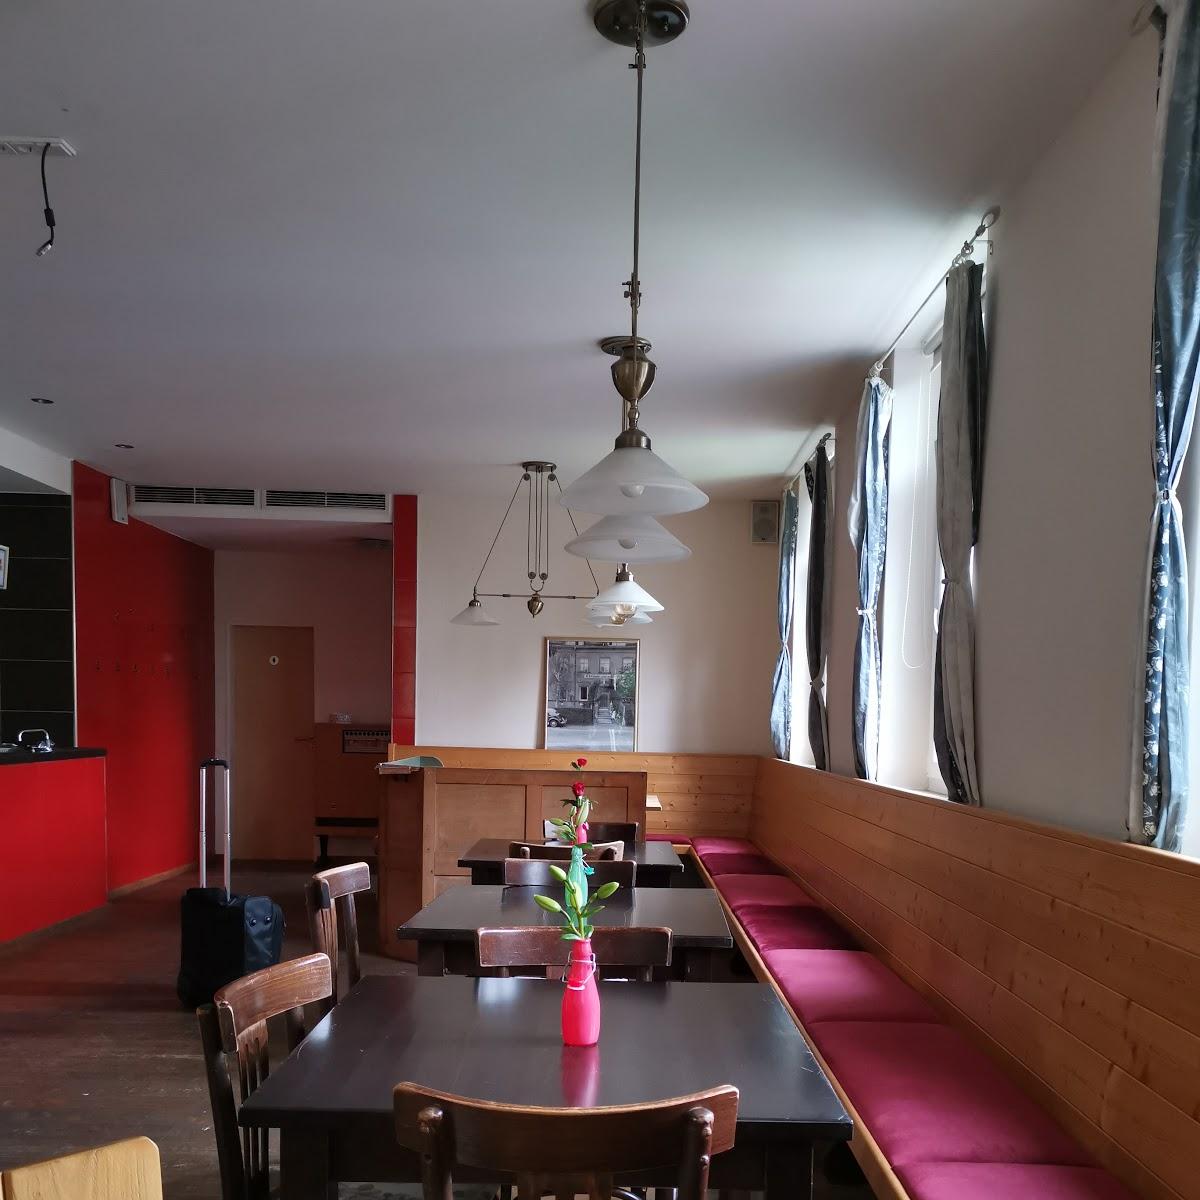 Restaurant "Wilder Mann- Gaststätte zum Mistelbach" in Bayreuth